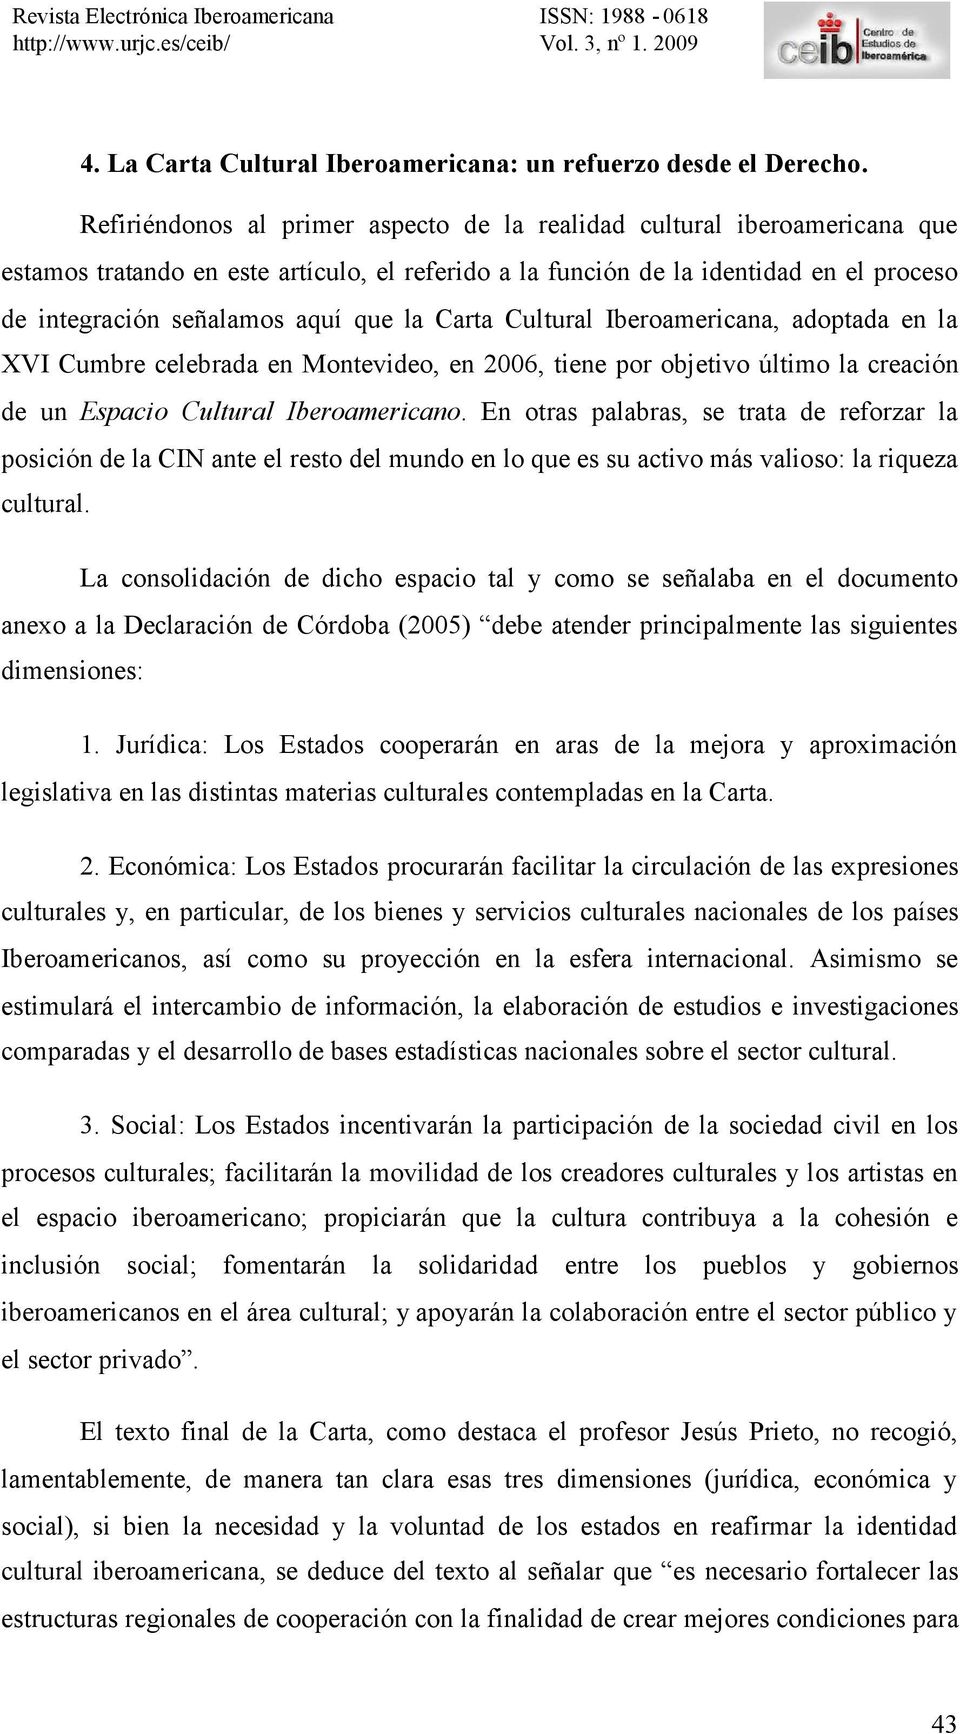 la Carta Cultural Iberoamericana, adoptada en la XVI Cumbre celebrada en Montevideo, en 2006, tiene por objetivo último la creación de un Espacio Cultural Iberoamericano.